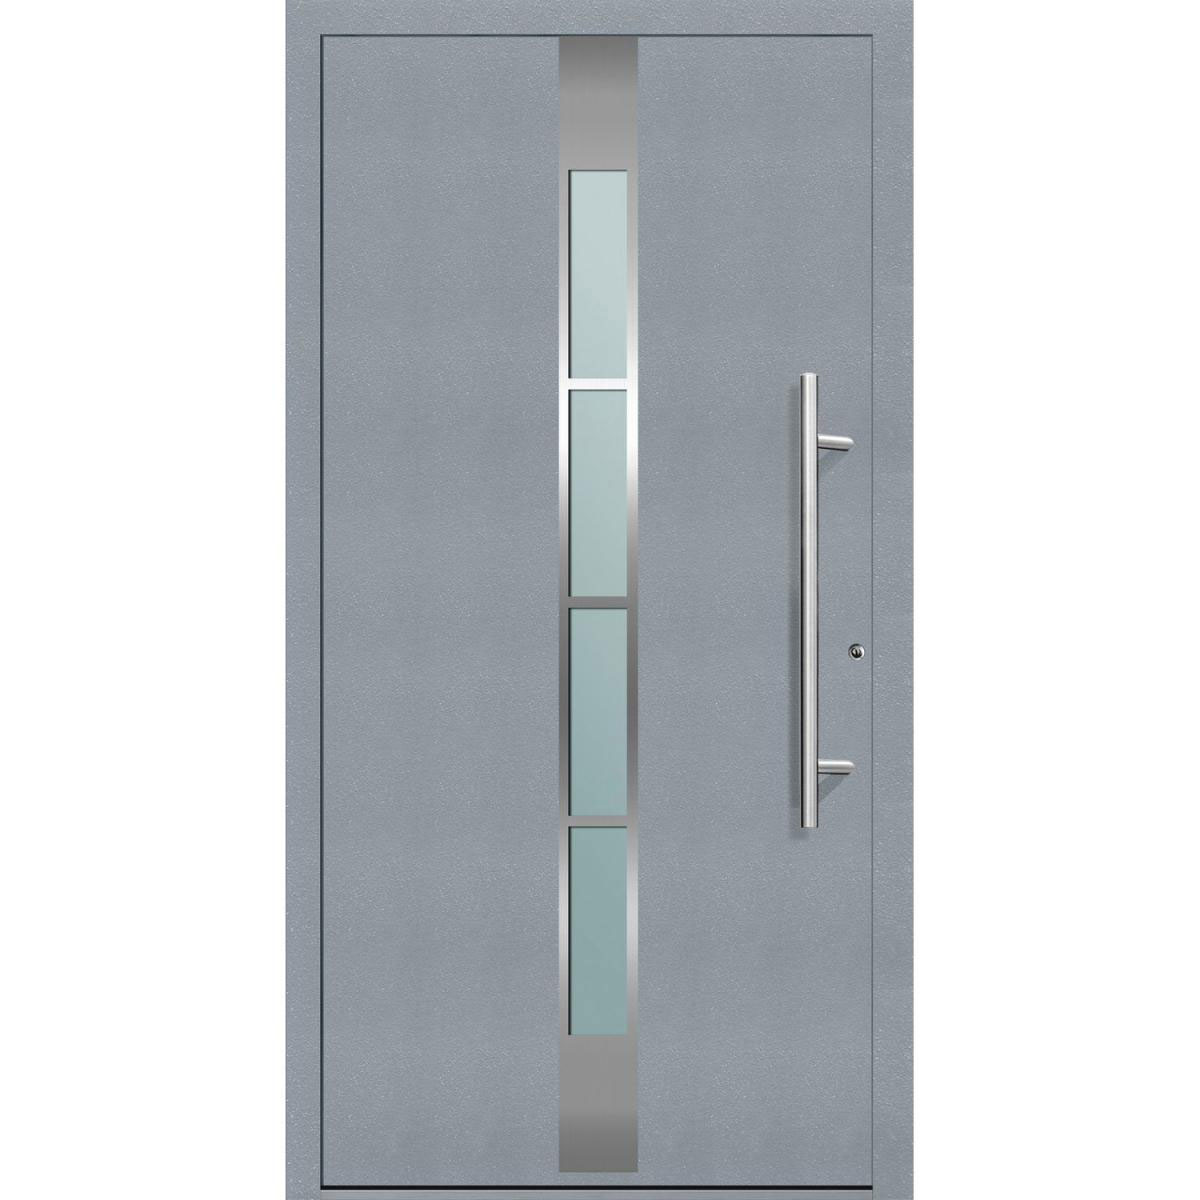 Aluminium Sicherheits-Haustür „Ferrara Exklusiv“, 75mm, grau, 110x210 cm, Anschlag rechts, inkl. Griffset